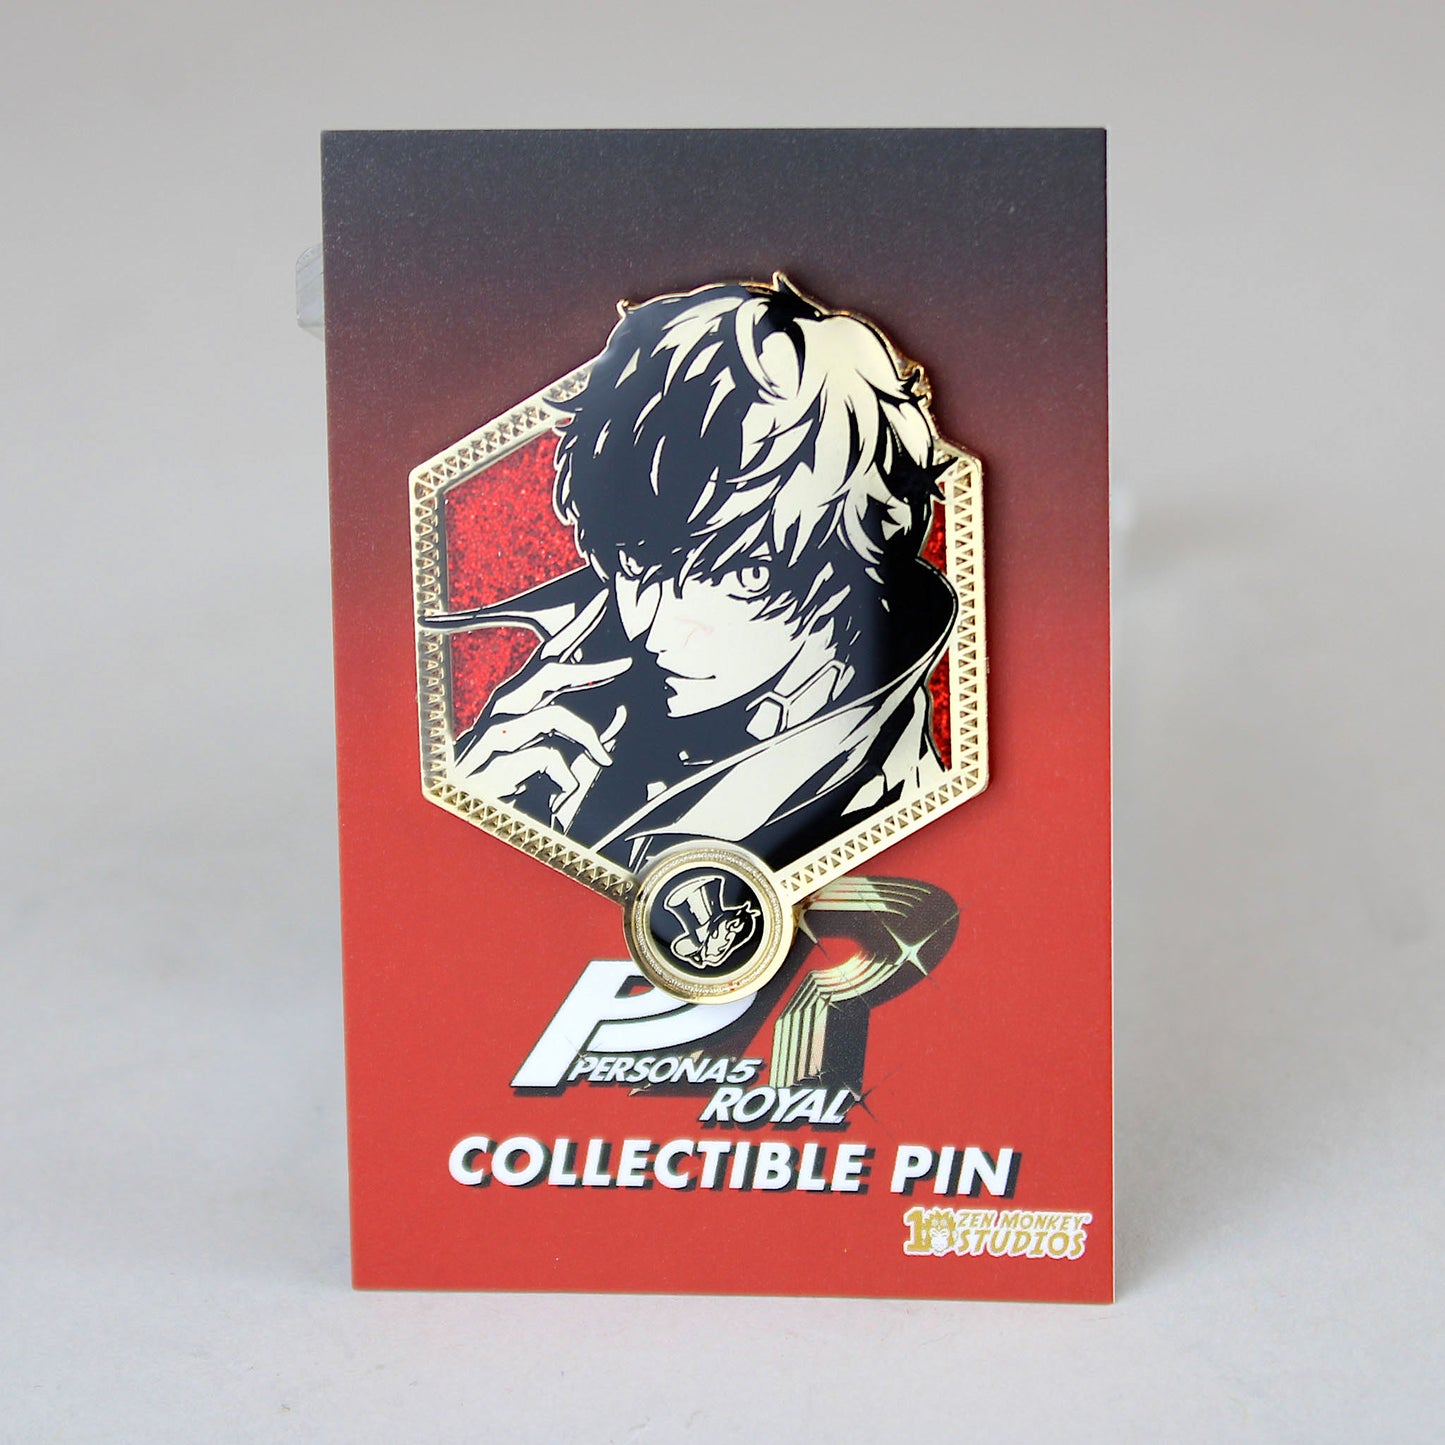 Ren Amamiya / Joker (Persona 5 Royal) Golden Series Pin